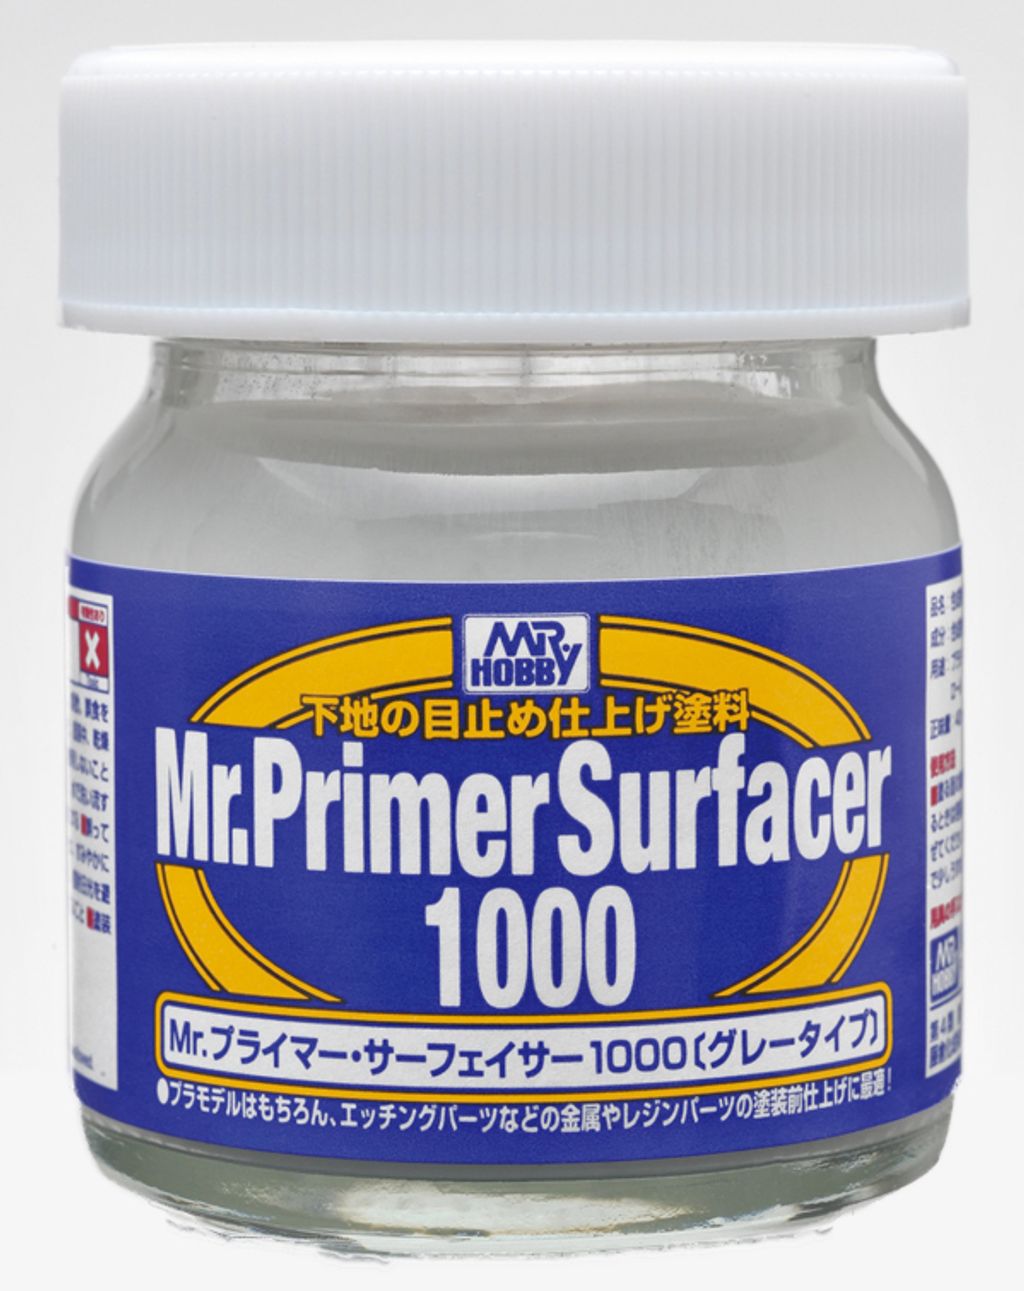 MR PRIMER SURFACER 1000.jpg